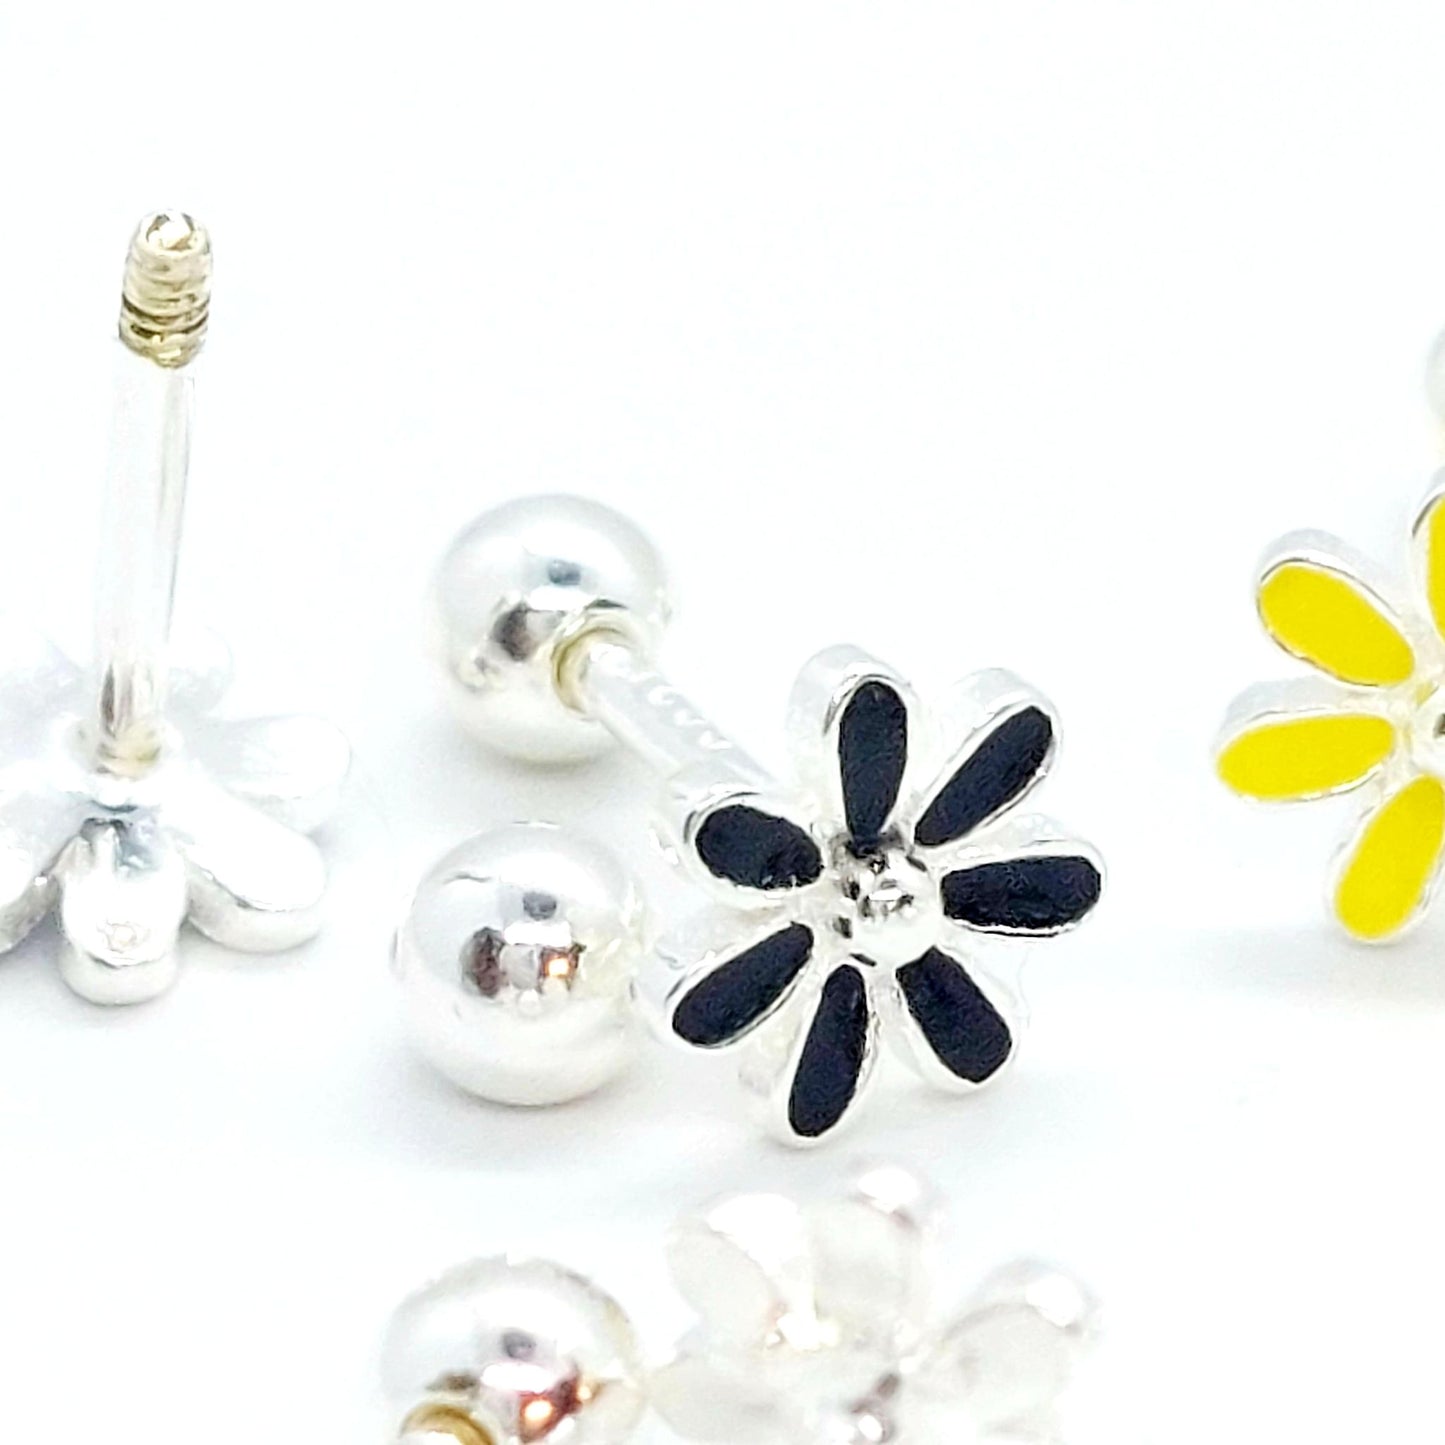 Flower Stud Earrings - Sterling Silver